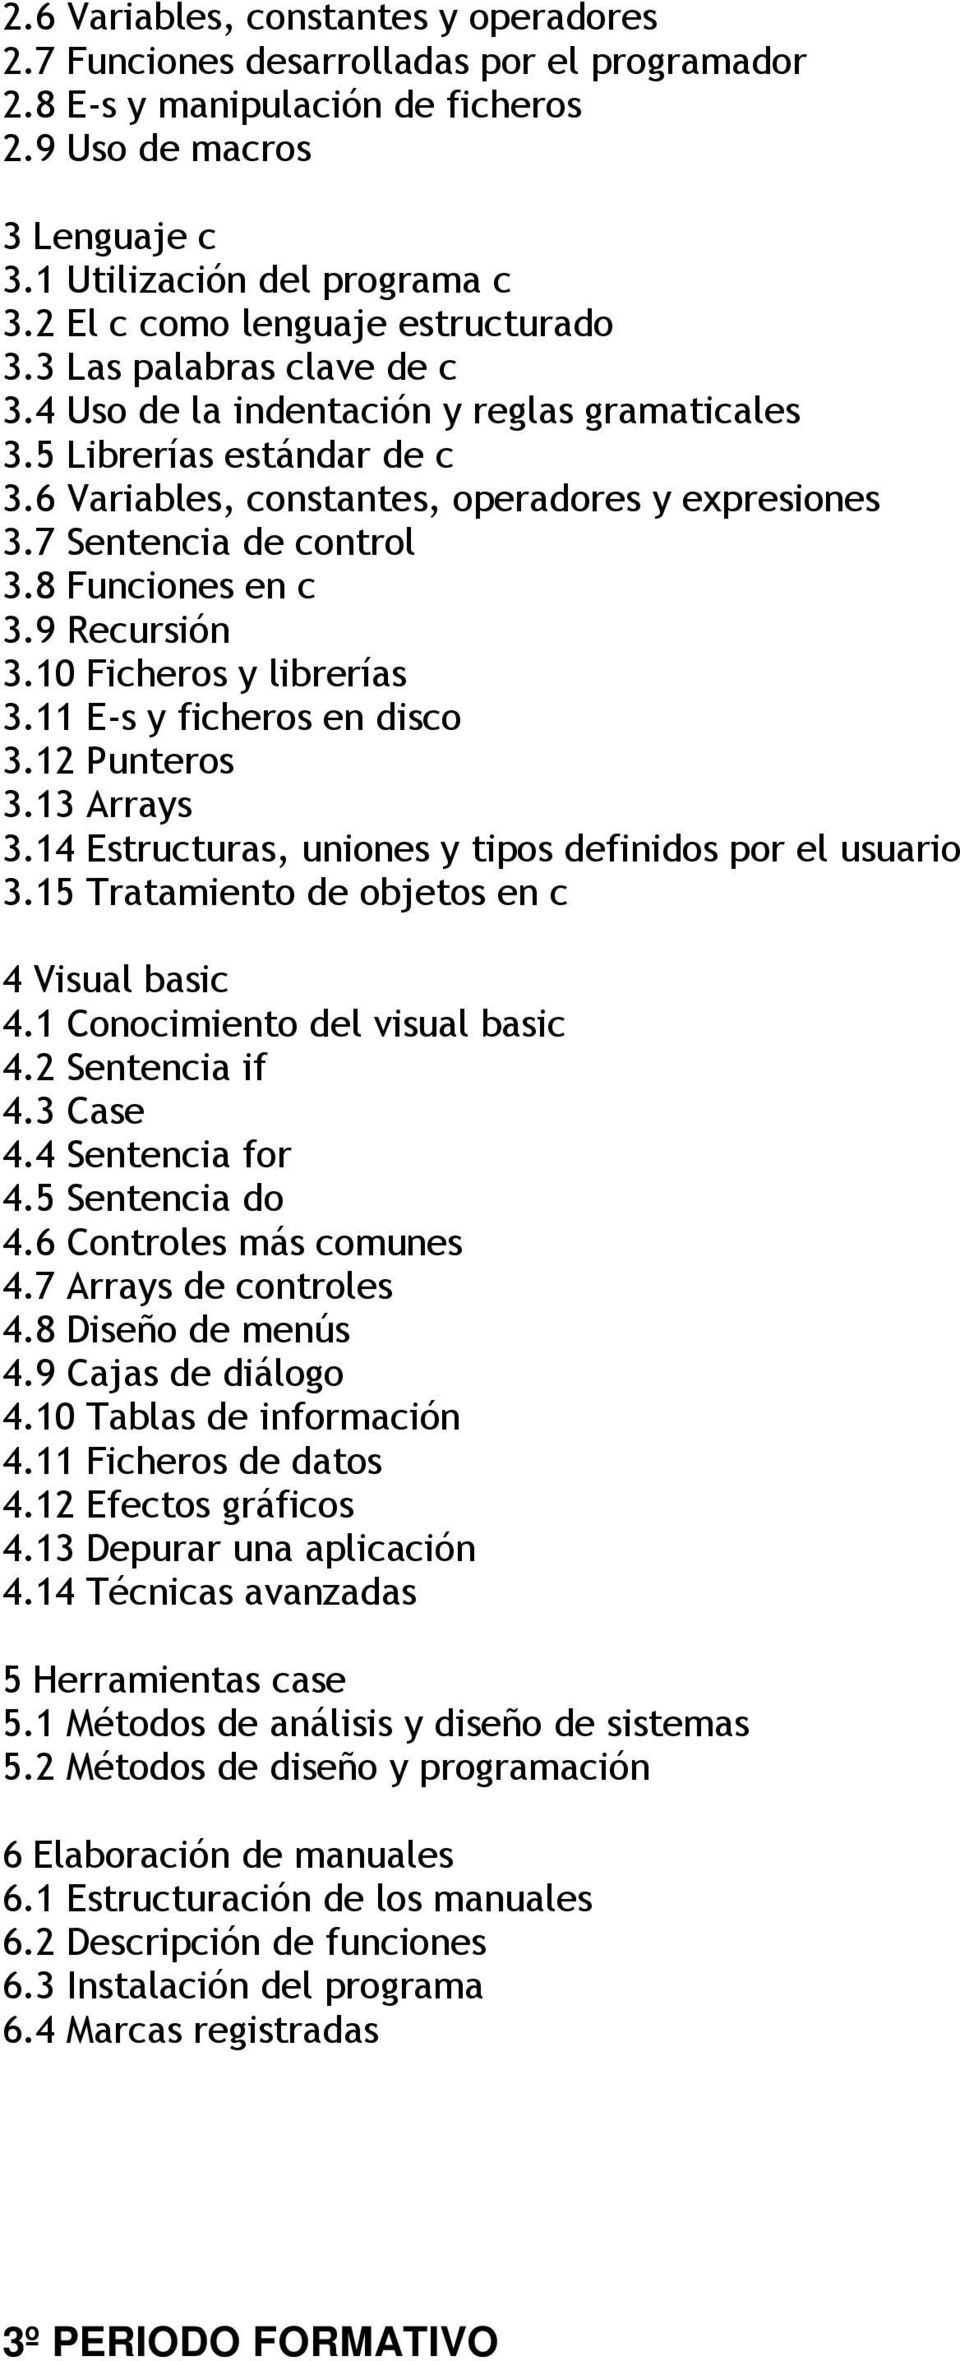 7 Sentencia de control 3.8 Funciones en c 3.9 Recursión 3.10 Ficheros y librerías 3.11 E-s y ficheros en disco 3.12 Punteros 3.13 Arrays 3.14 Estructuras, uniones y tipos definidos por el usuario 3.